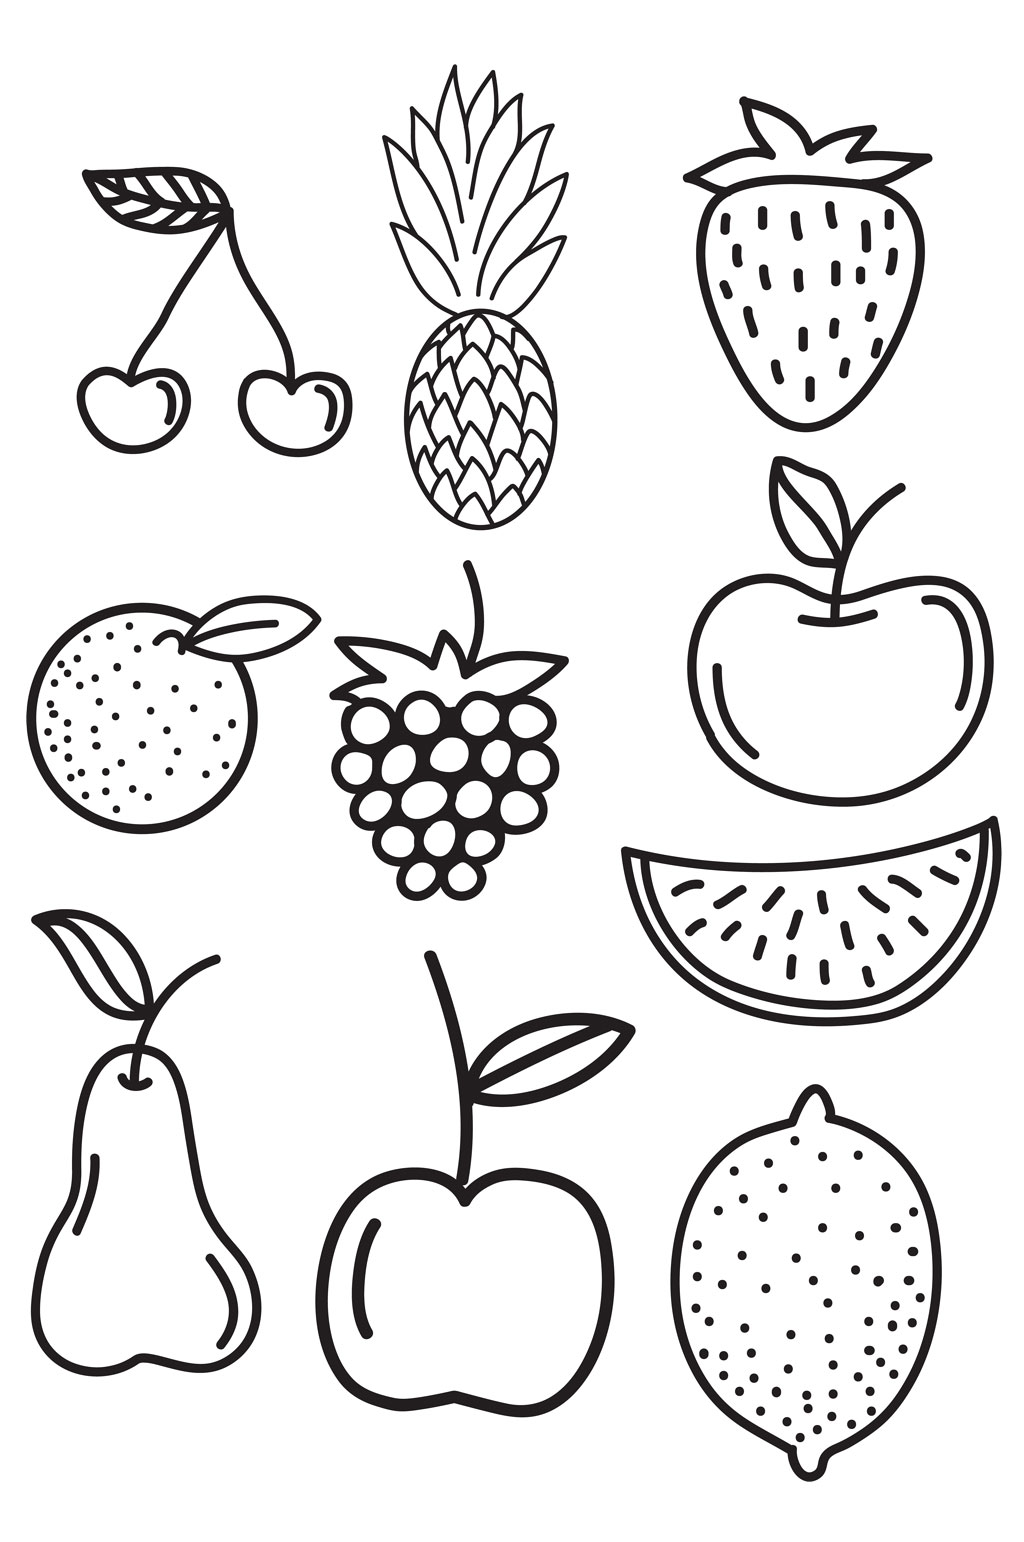 水果简笔画水果图案